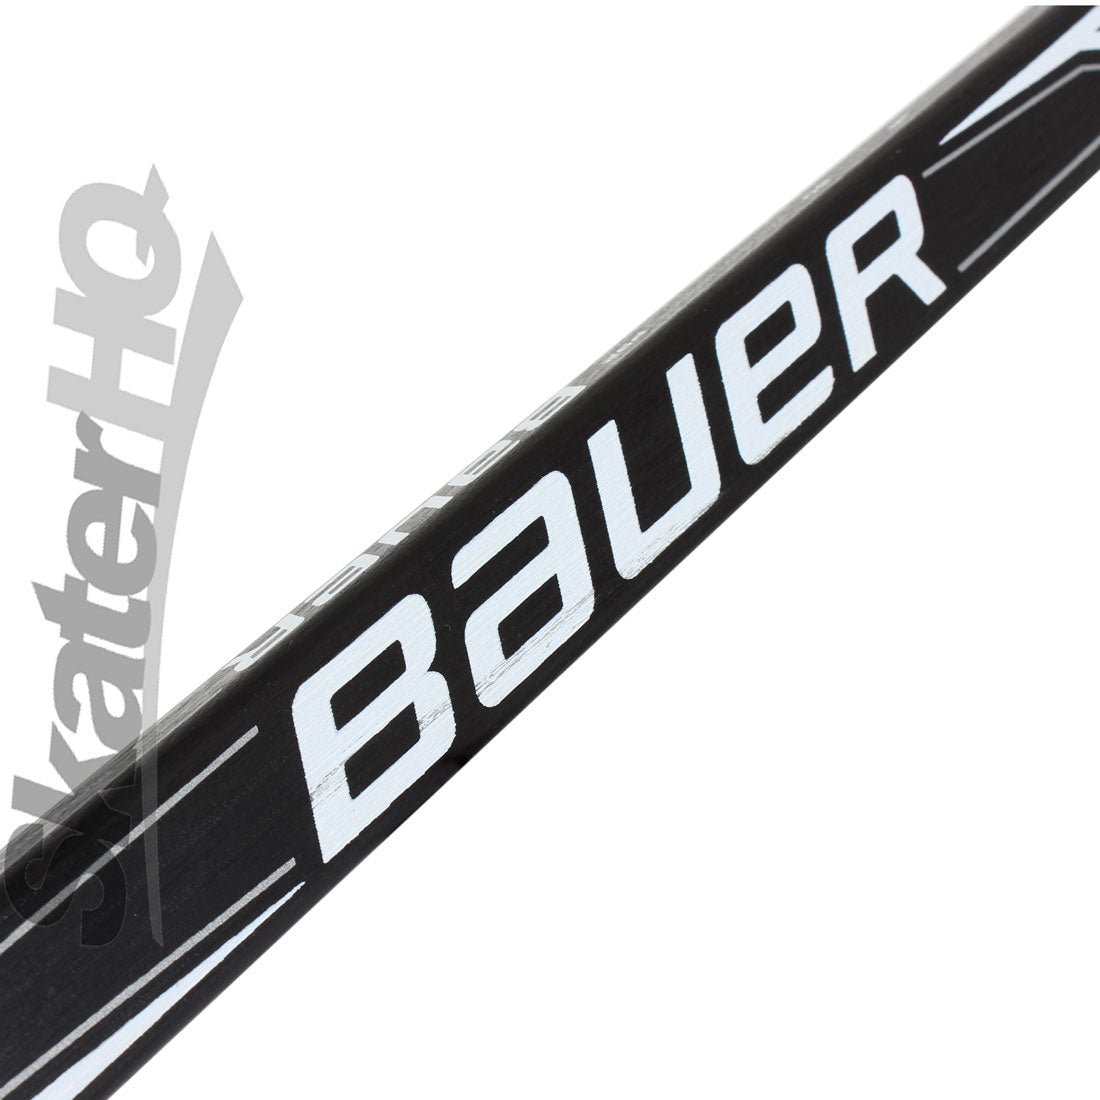 Bauer i400 ABS Junior LH Stick Hockey